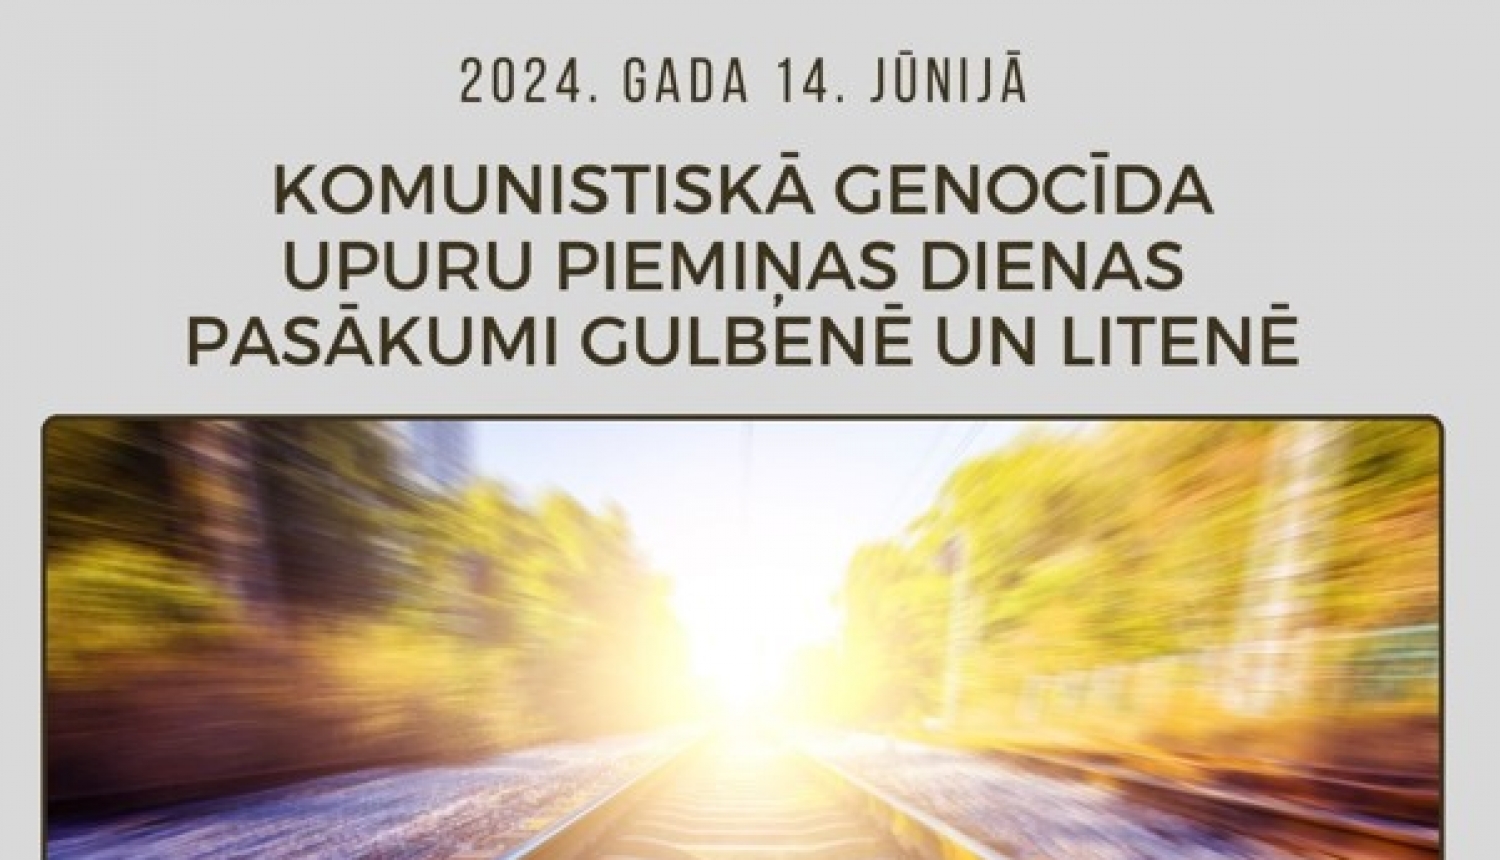 Gulbenē, Litenē, Rankā pieminēs komunistiskā genocīda upurus